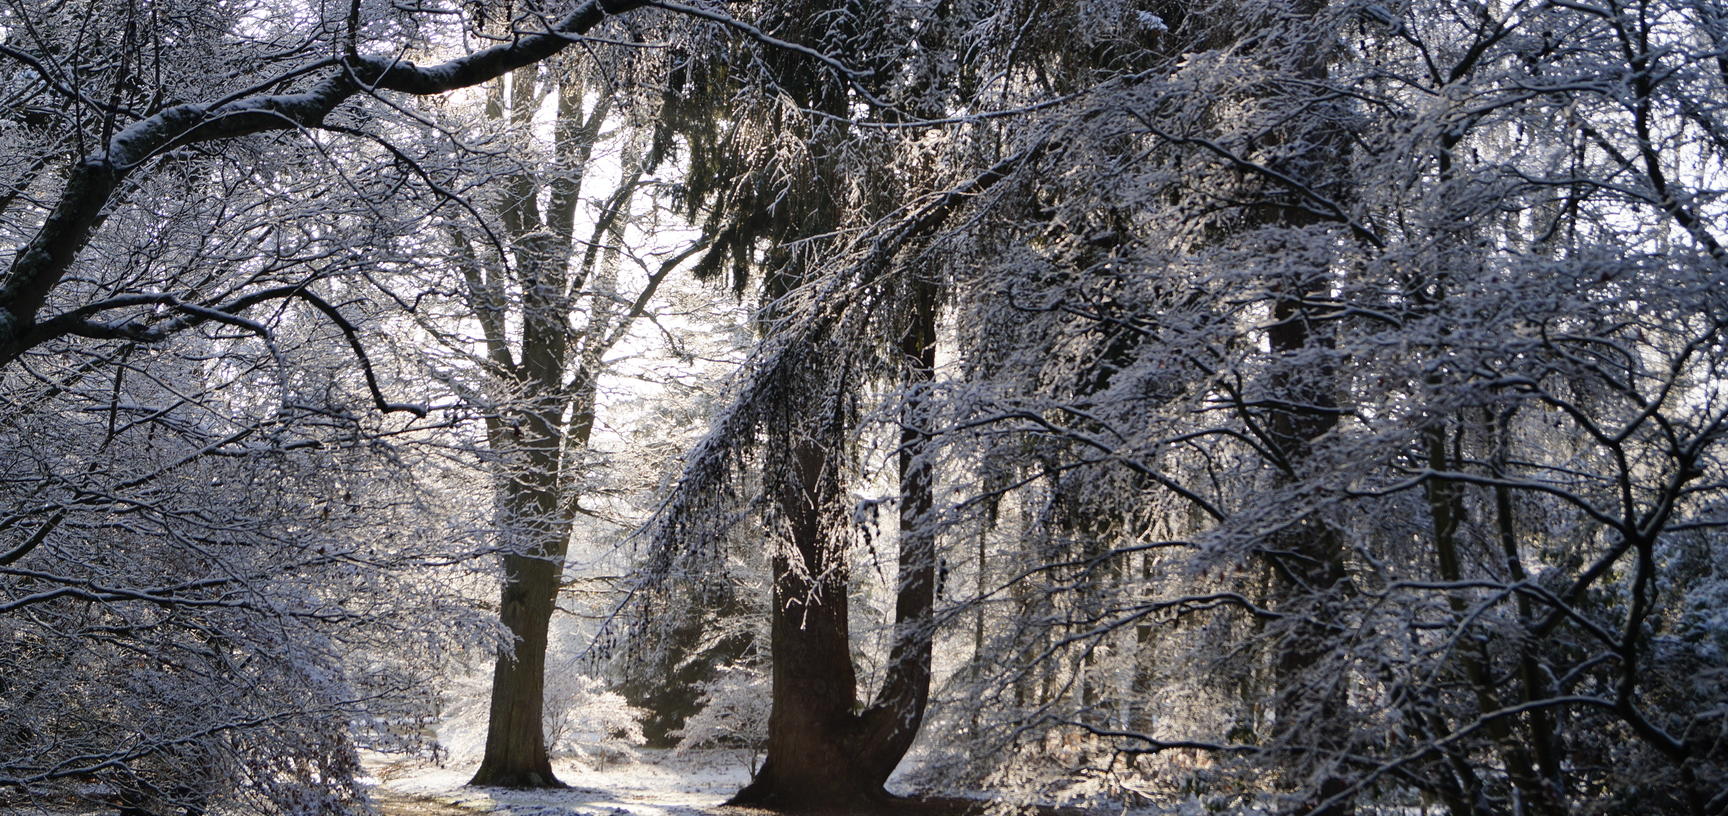 harcourt arboretum  acer glade  winter  snow